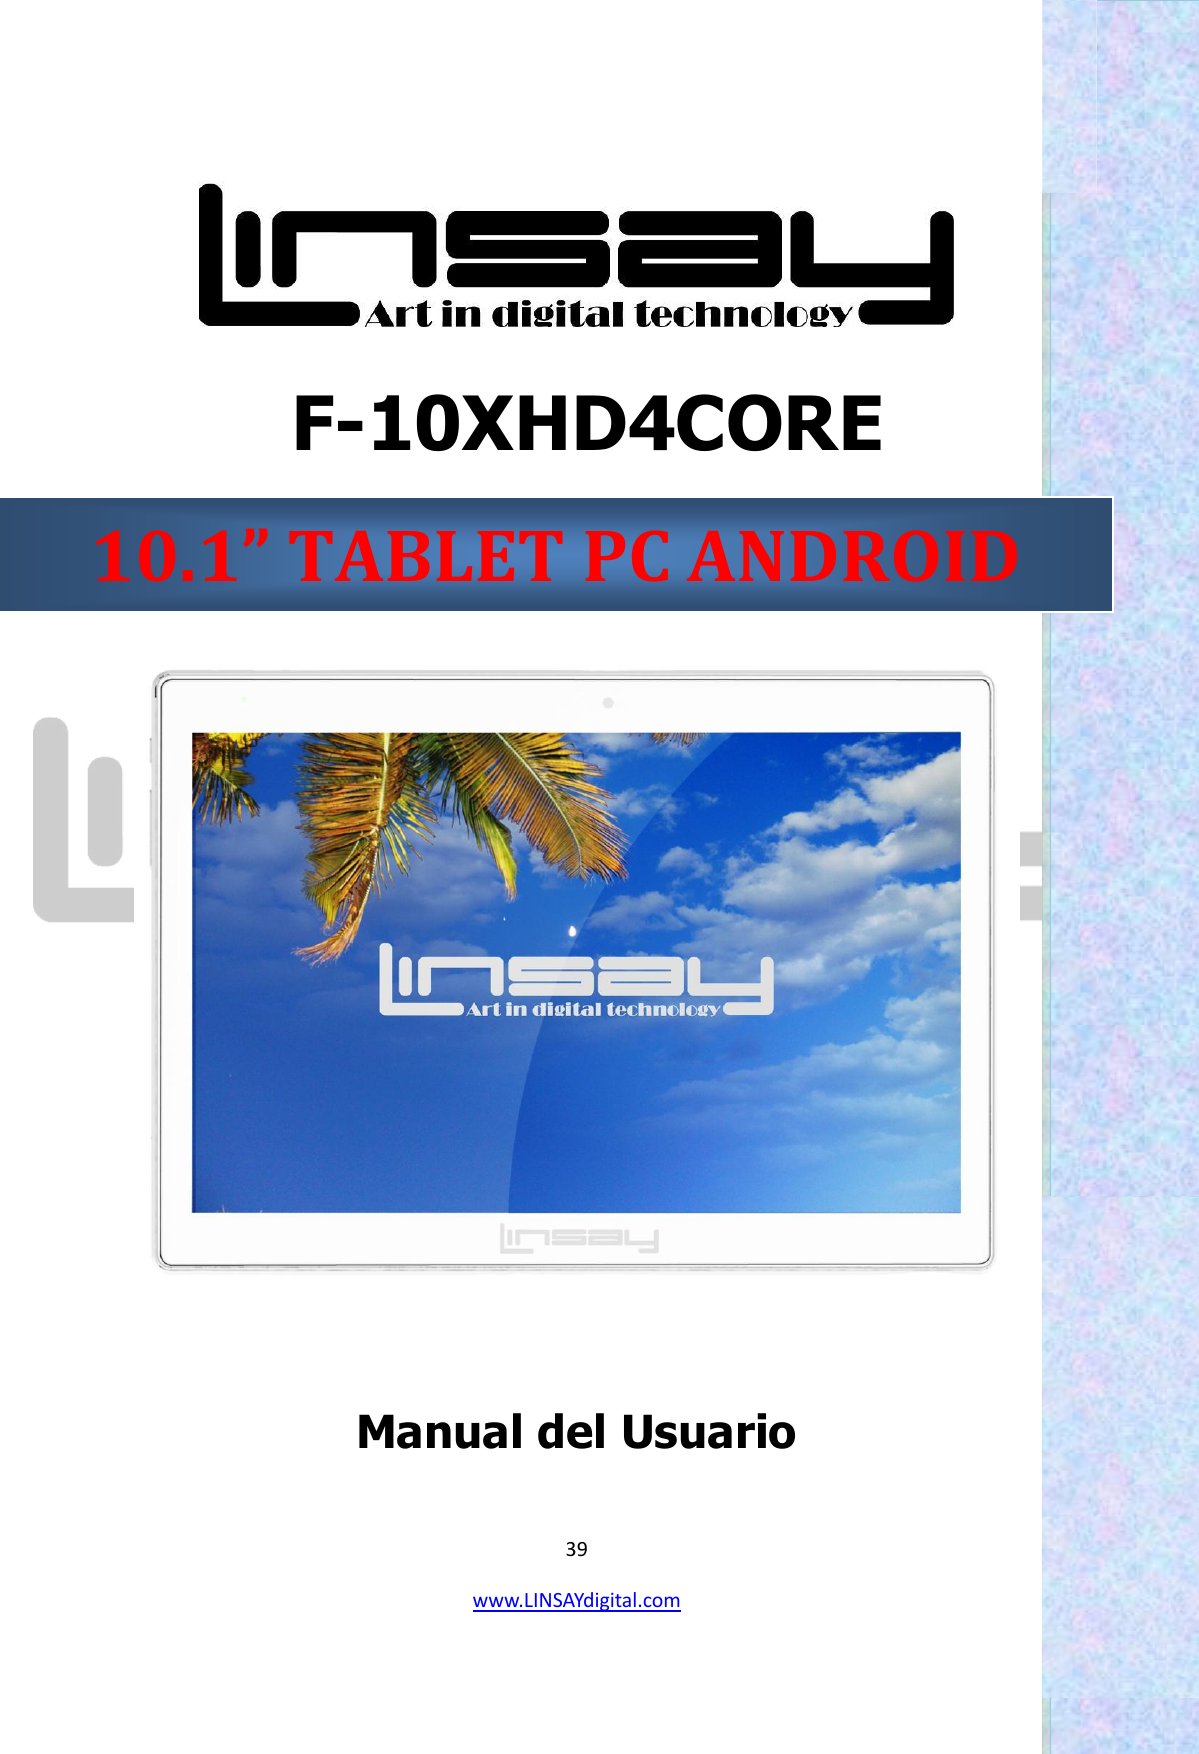  39 www.LINSAYdigital.com      F-10XHD4CORE    Manual del Usuario                                                                 10.1” TABLET PC ANDROID 